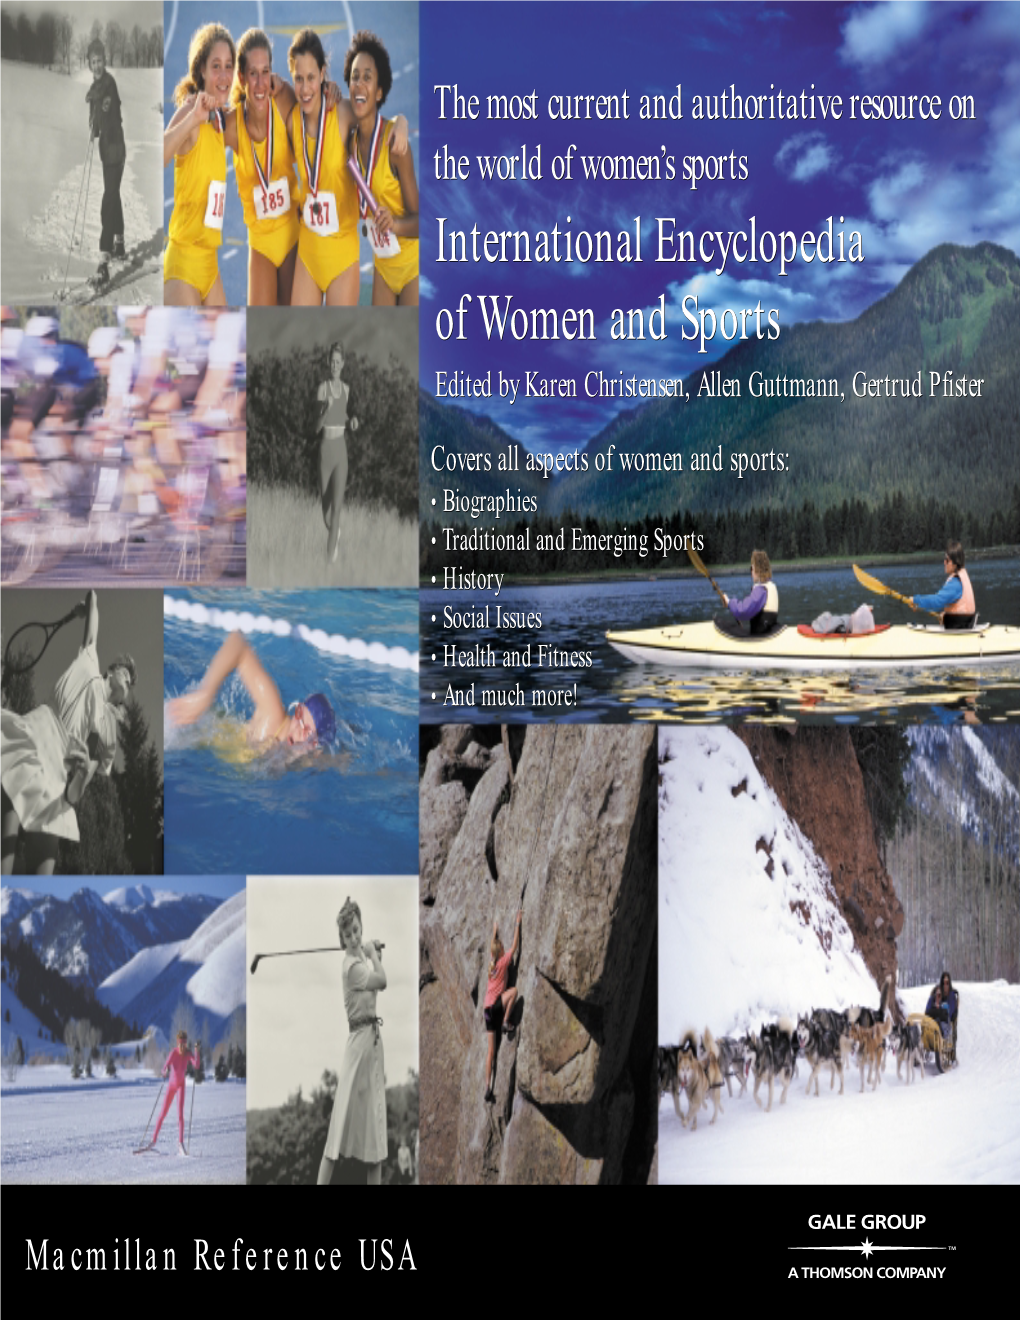 International Encyclopedia of Women and Sports Edited by Karen Christensen, Allen Guttmann, Gertrud Pfister